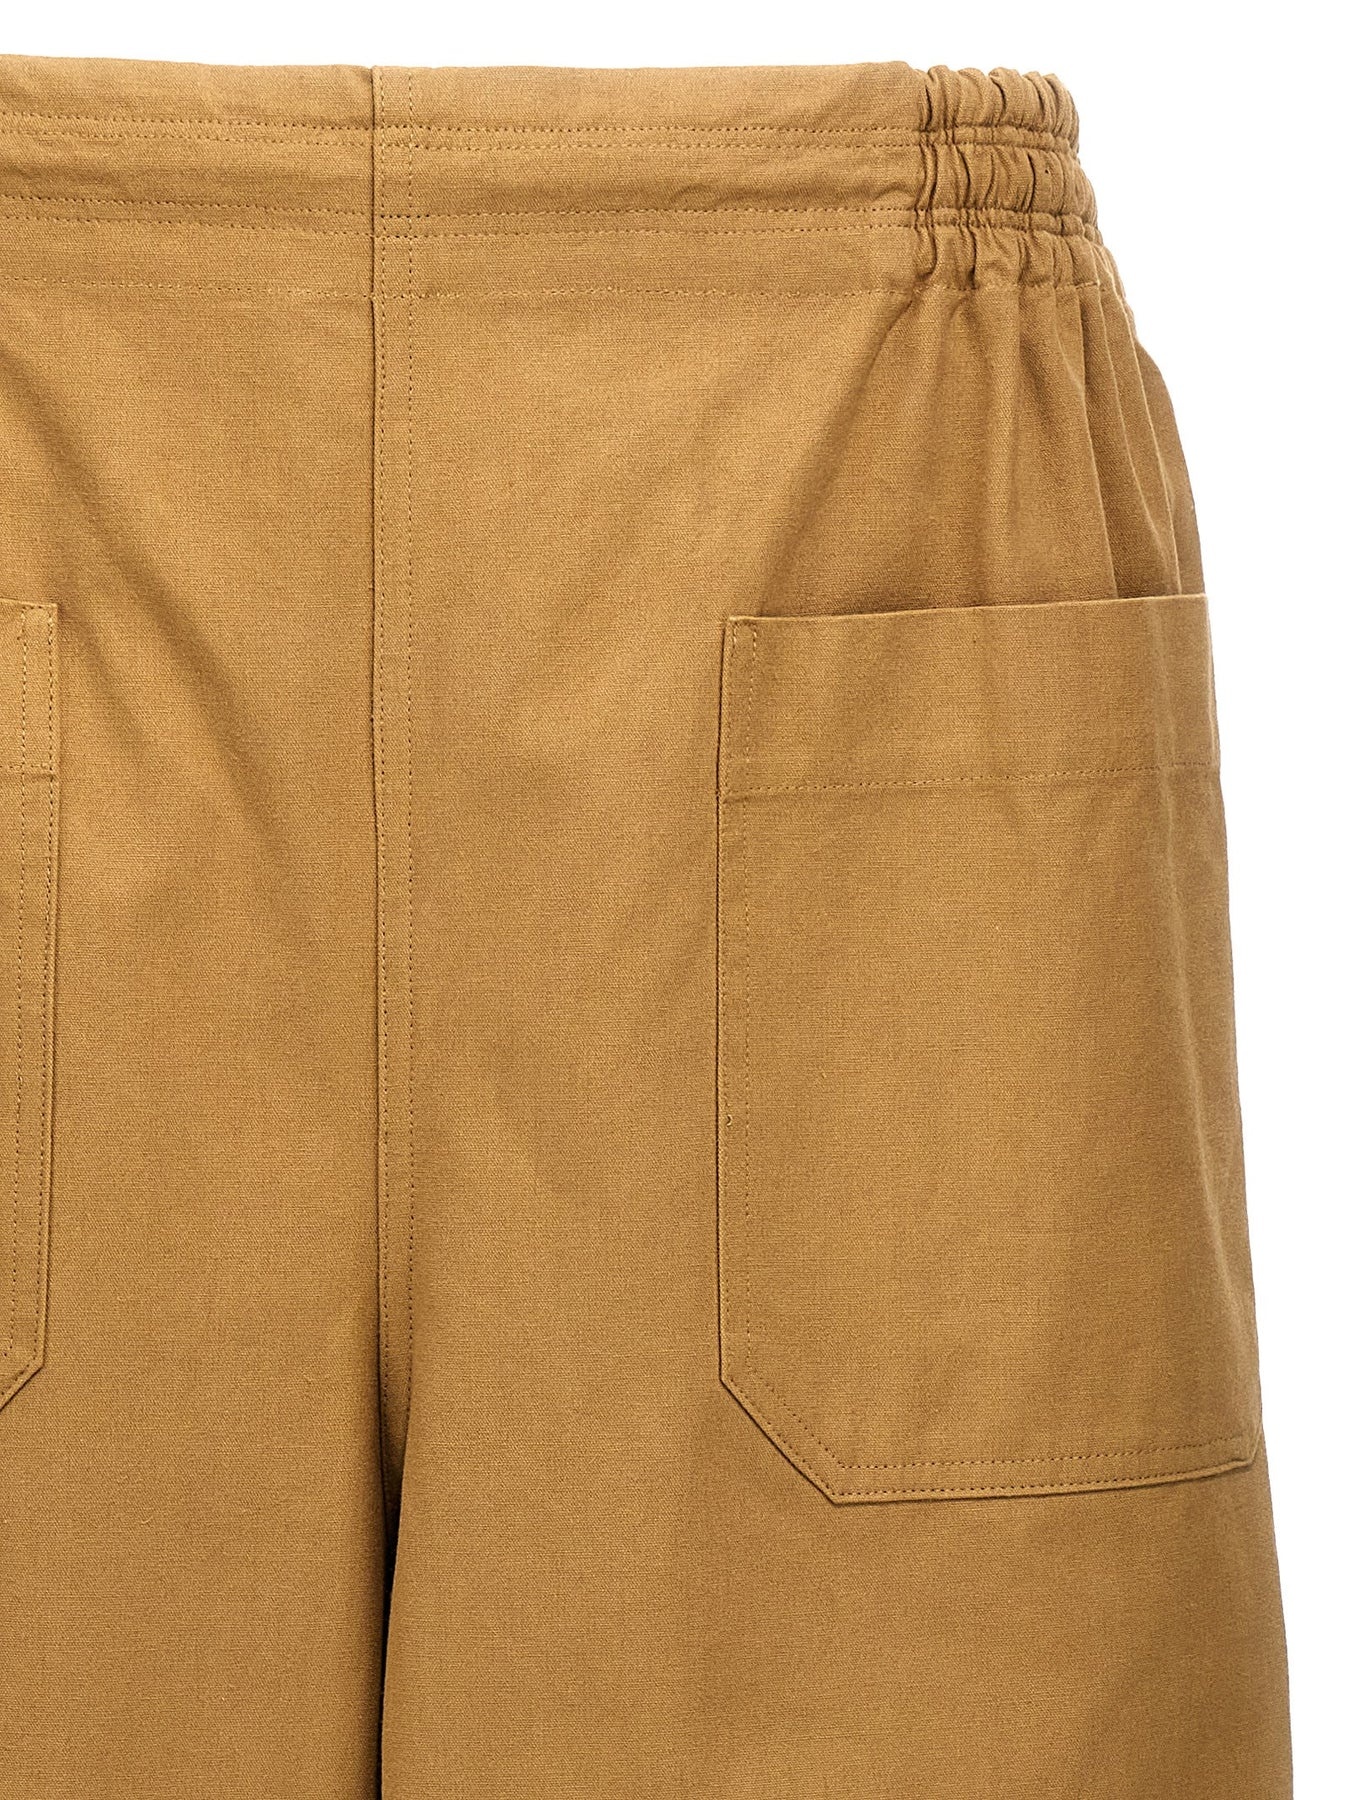 Cotton Trousers Pants Beige - 3